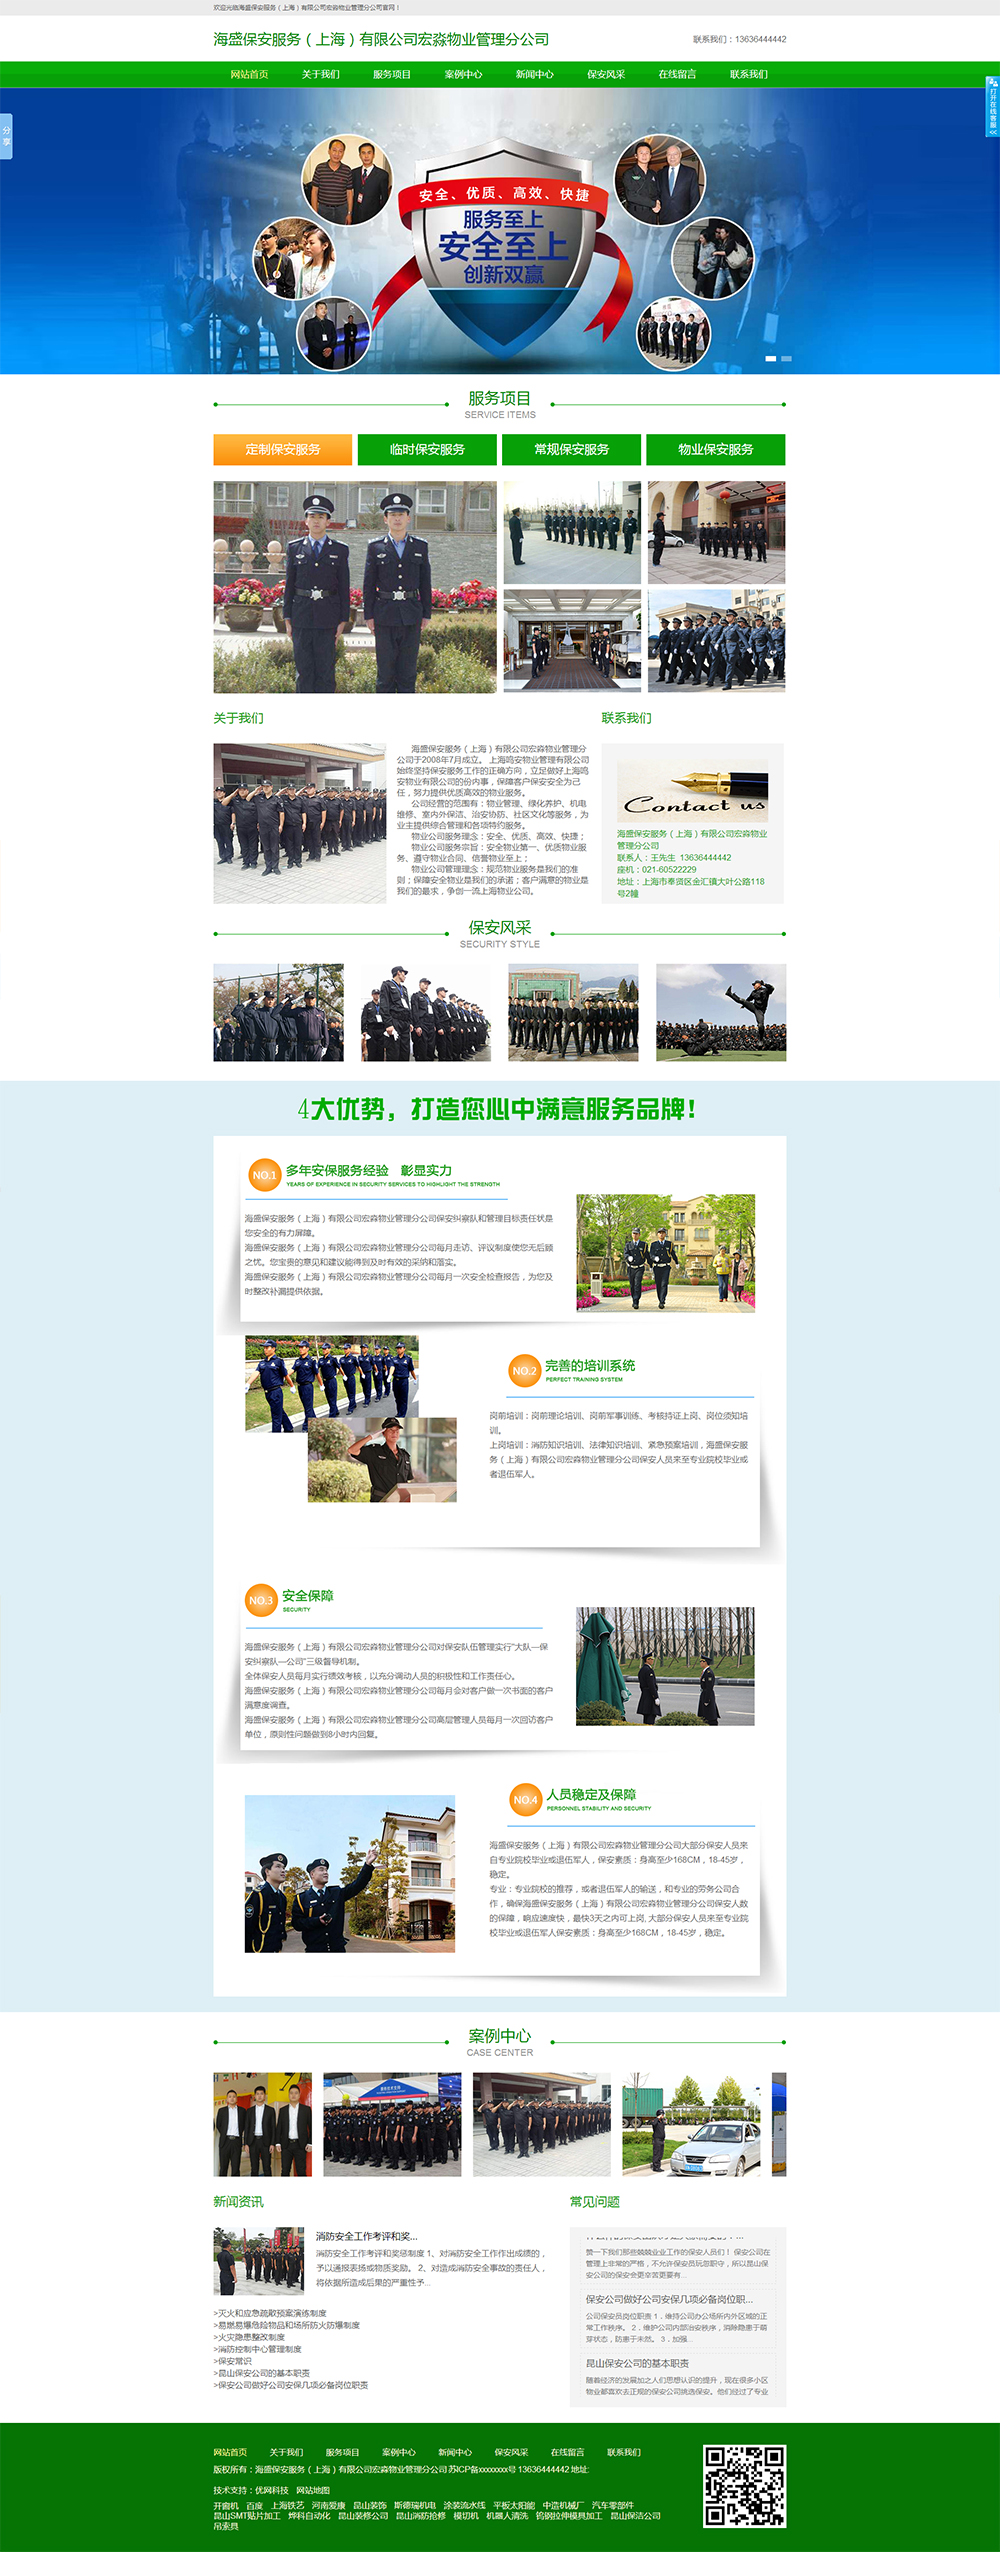 海盛保安服务（上海）有限公司宏淼物业管理分公司